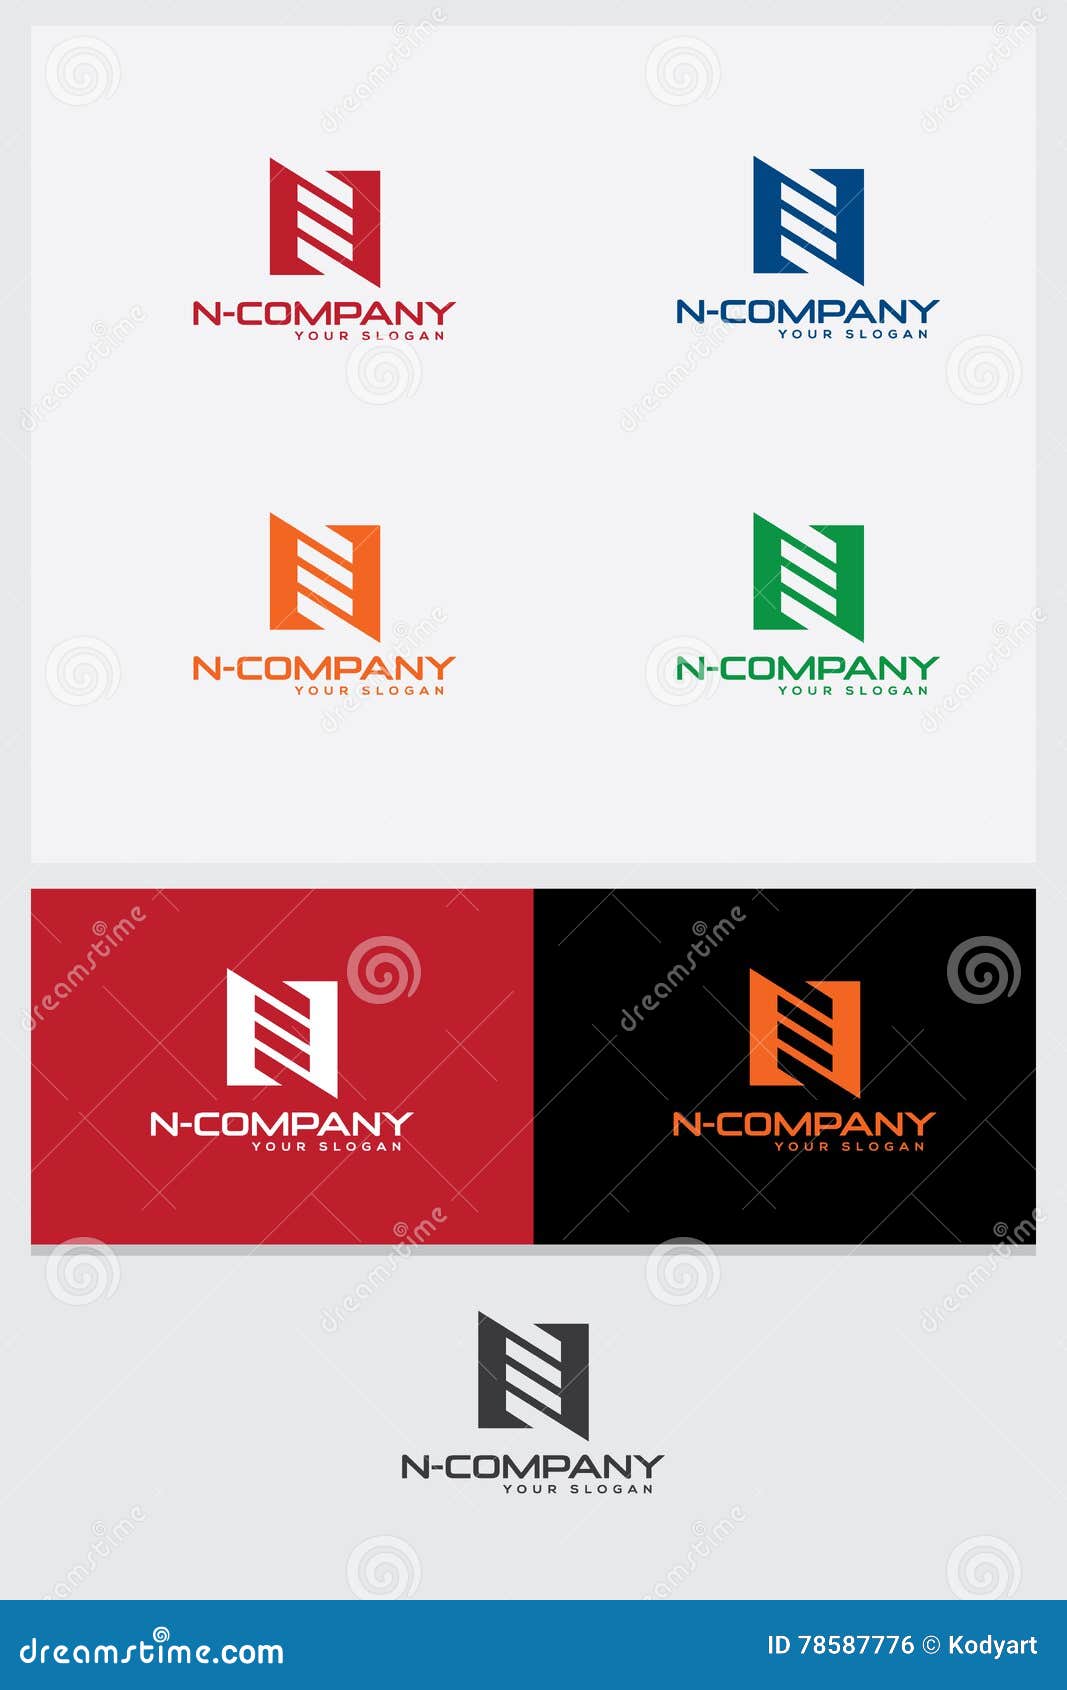 logo image set - stylized letter n